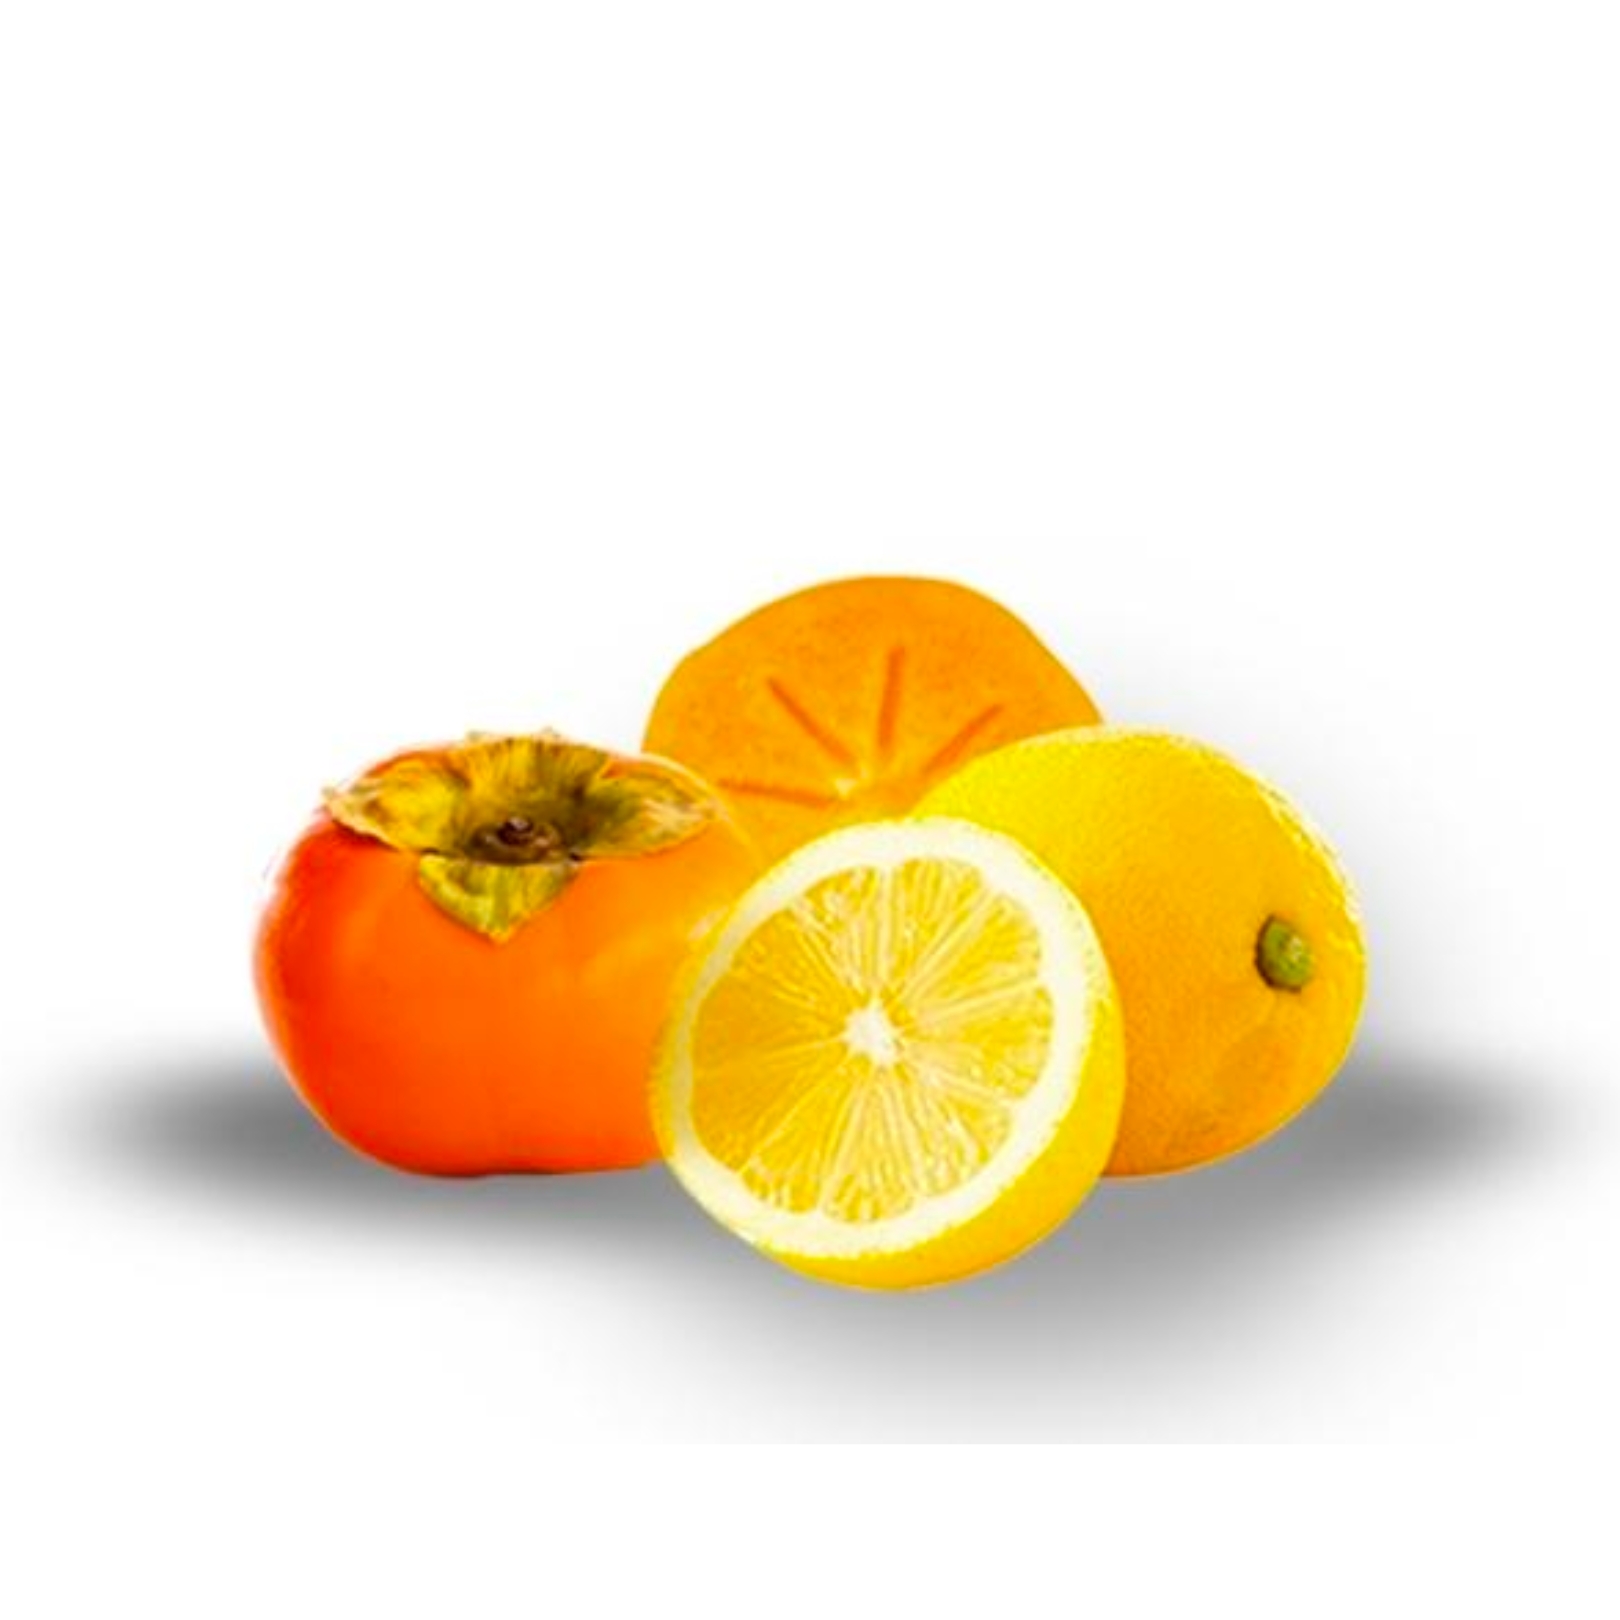 Buy Persimmon Lemon Online NZ